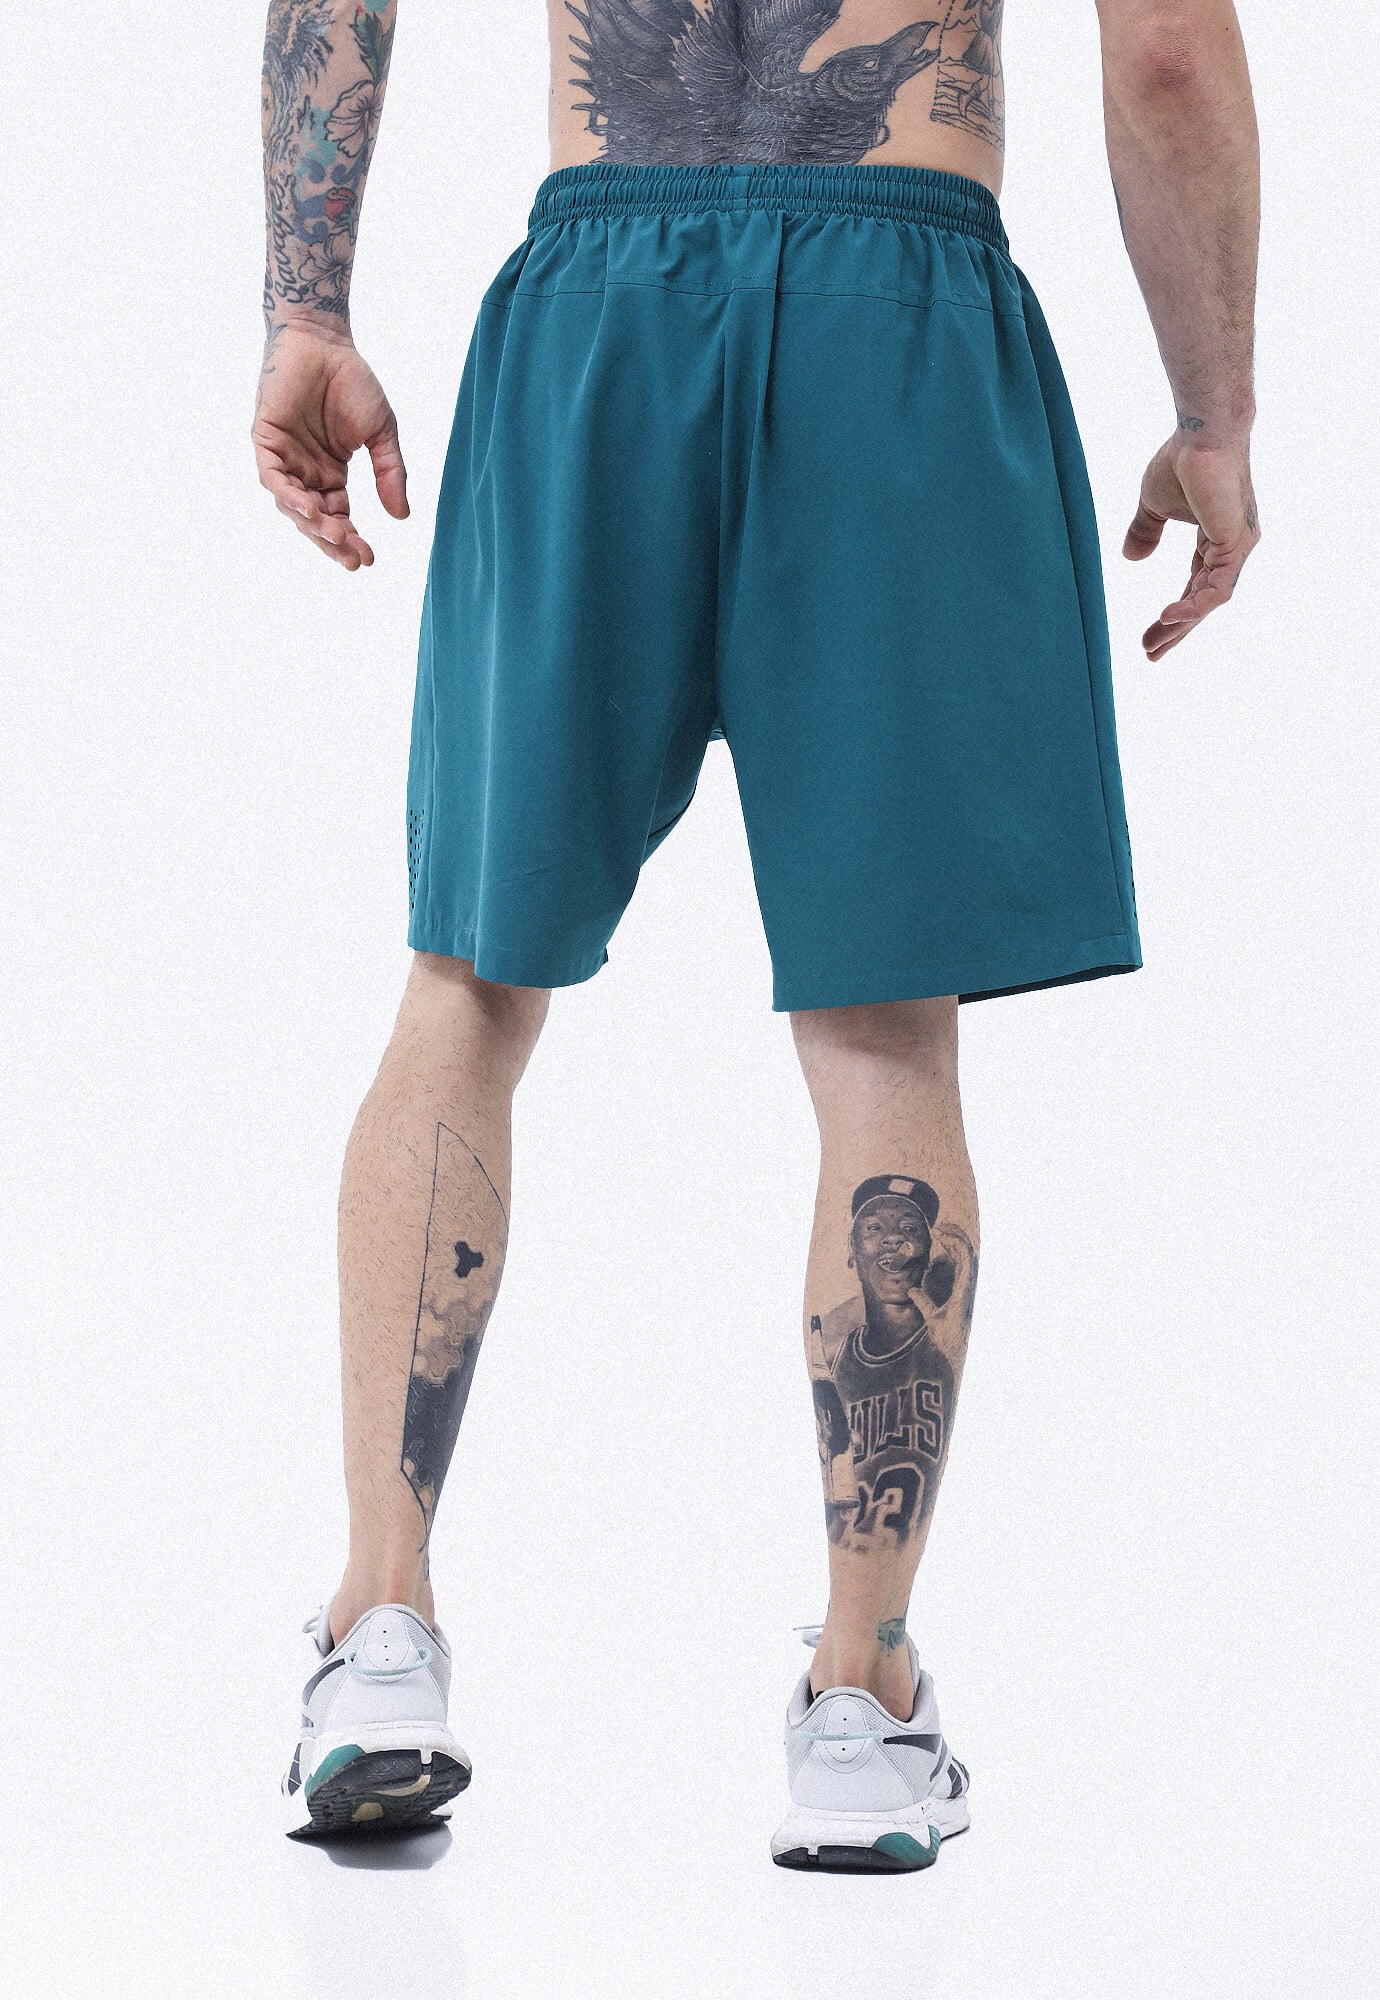 Pantaloneta deportiva verde esmeralda, cintura con elastico y cordon ajustable, bolsillos funcionales y ciclista interno para hombre.